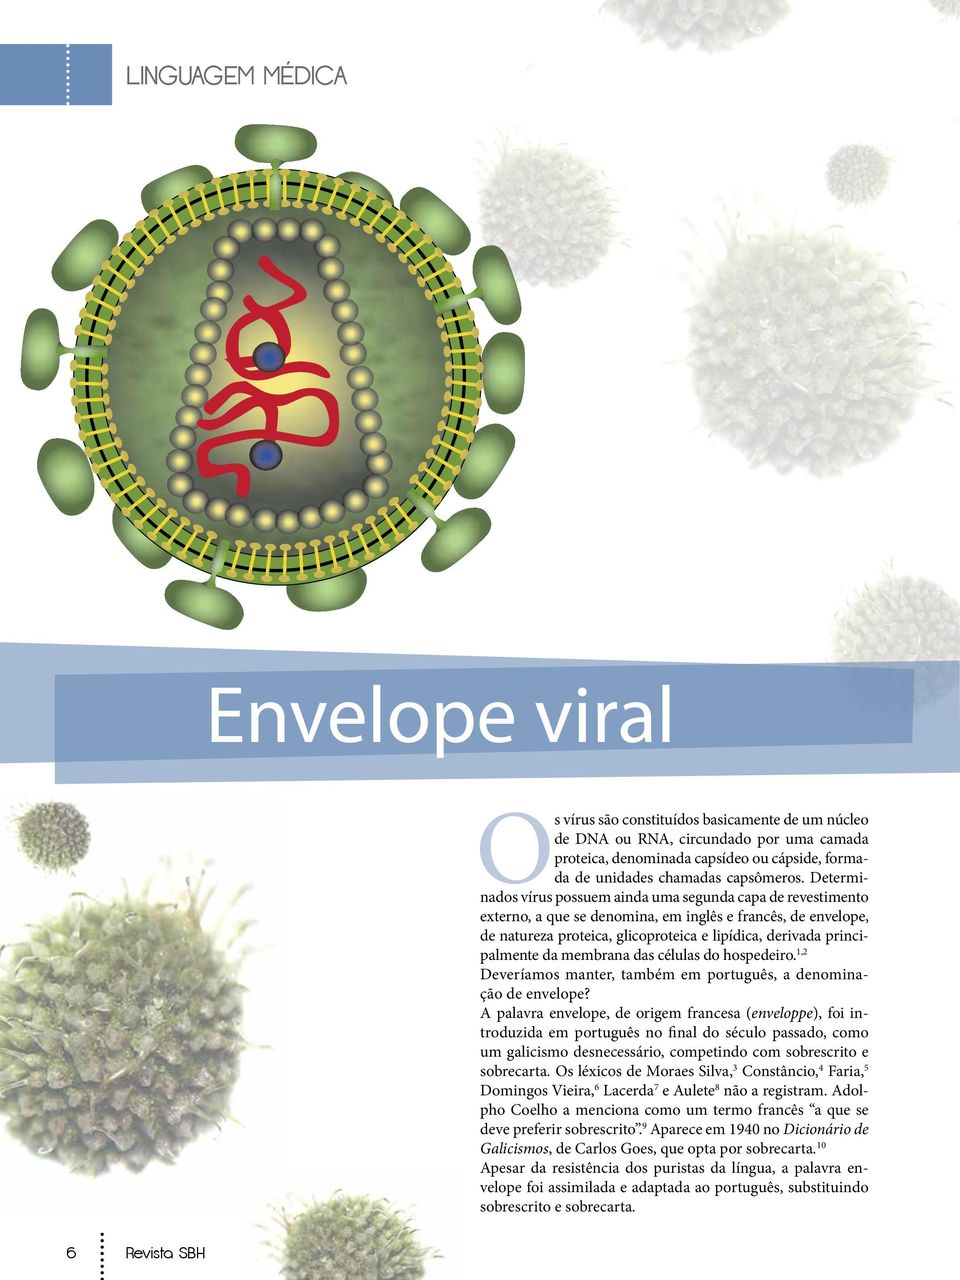 Determinados vírus possuem ainda uma segunda capa de revestimento externo, a que se denomina, em inglês e francês, de envelope, de natureza proteica, glicoproteica e lipídica, derivada principalmente